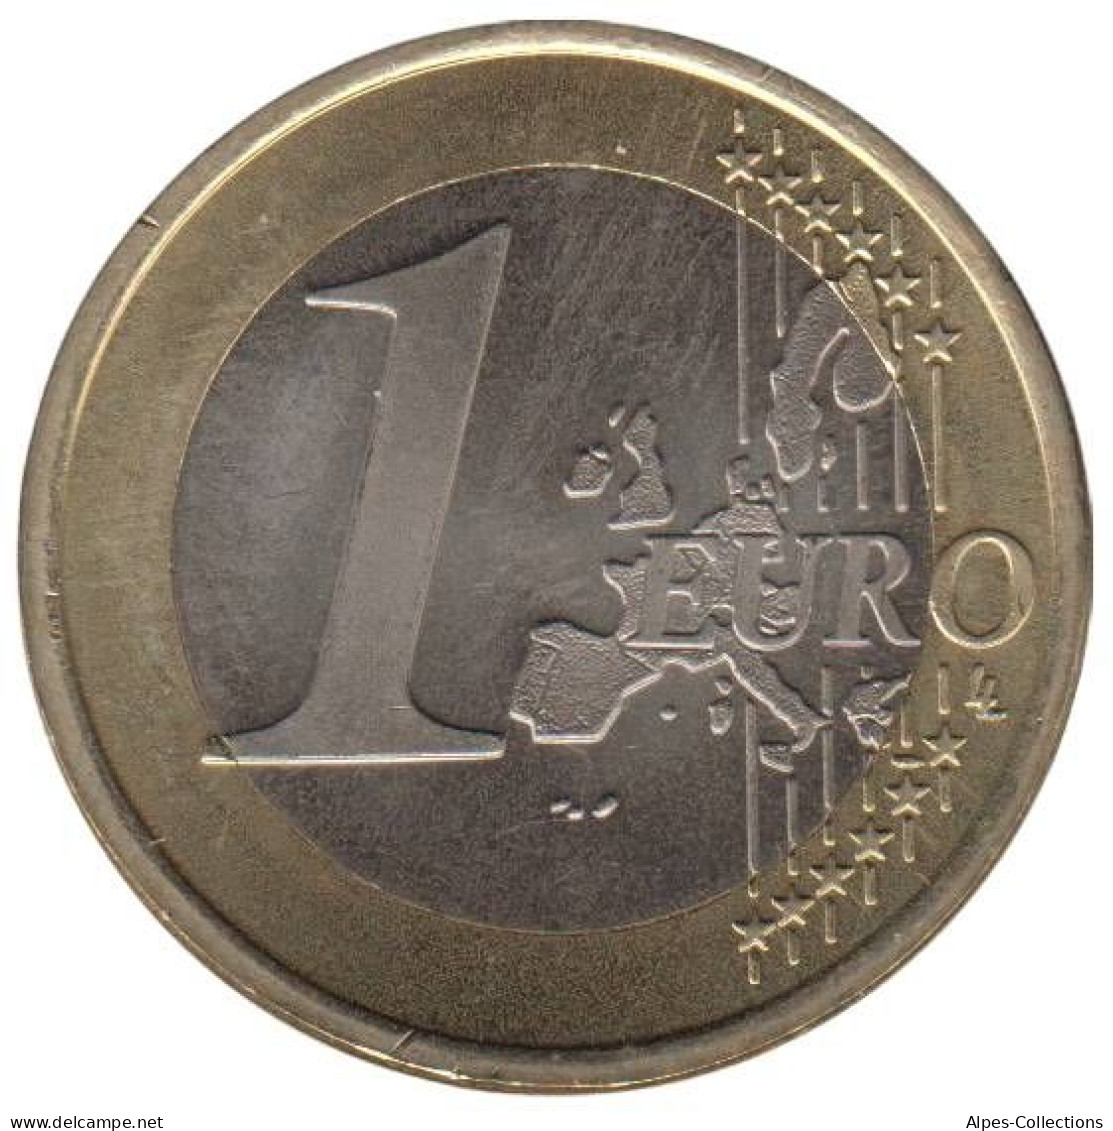 FI10004.1 - FINLANDE - 1 Euro - 2004 - Finlandía